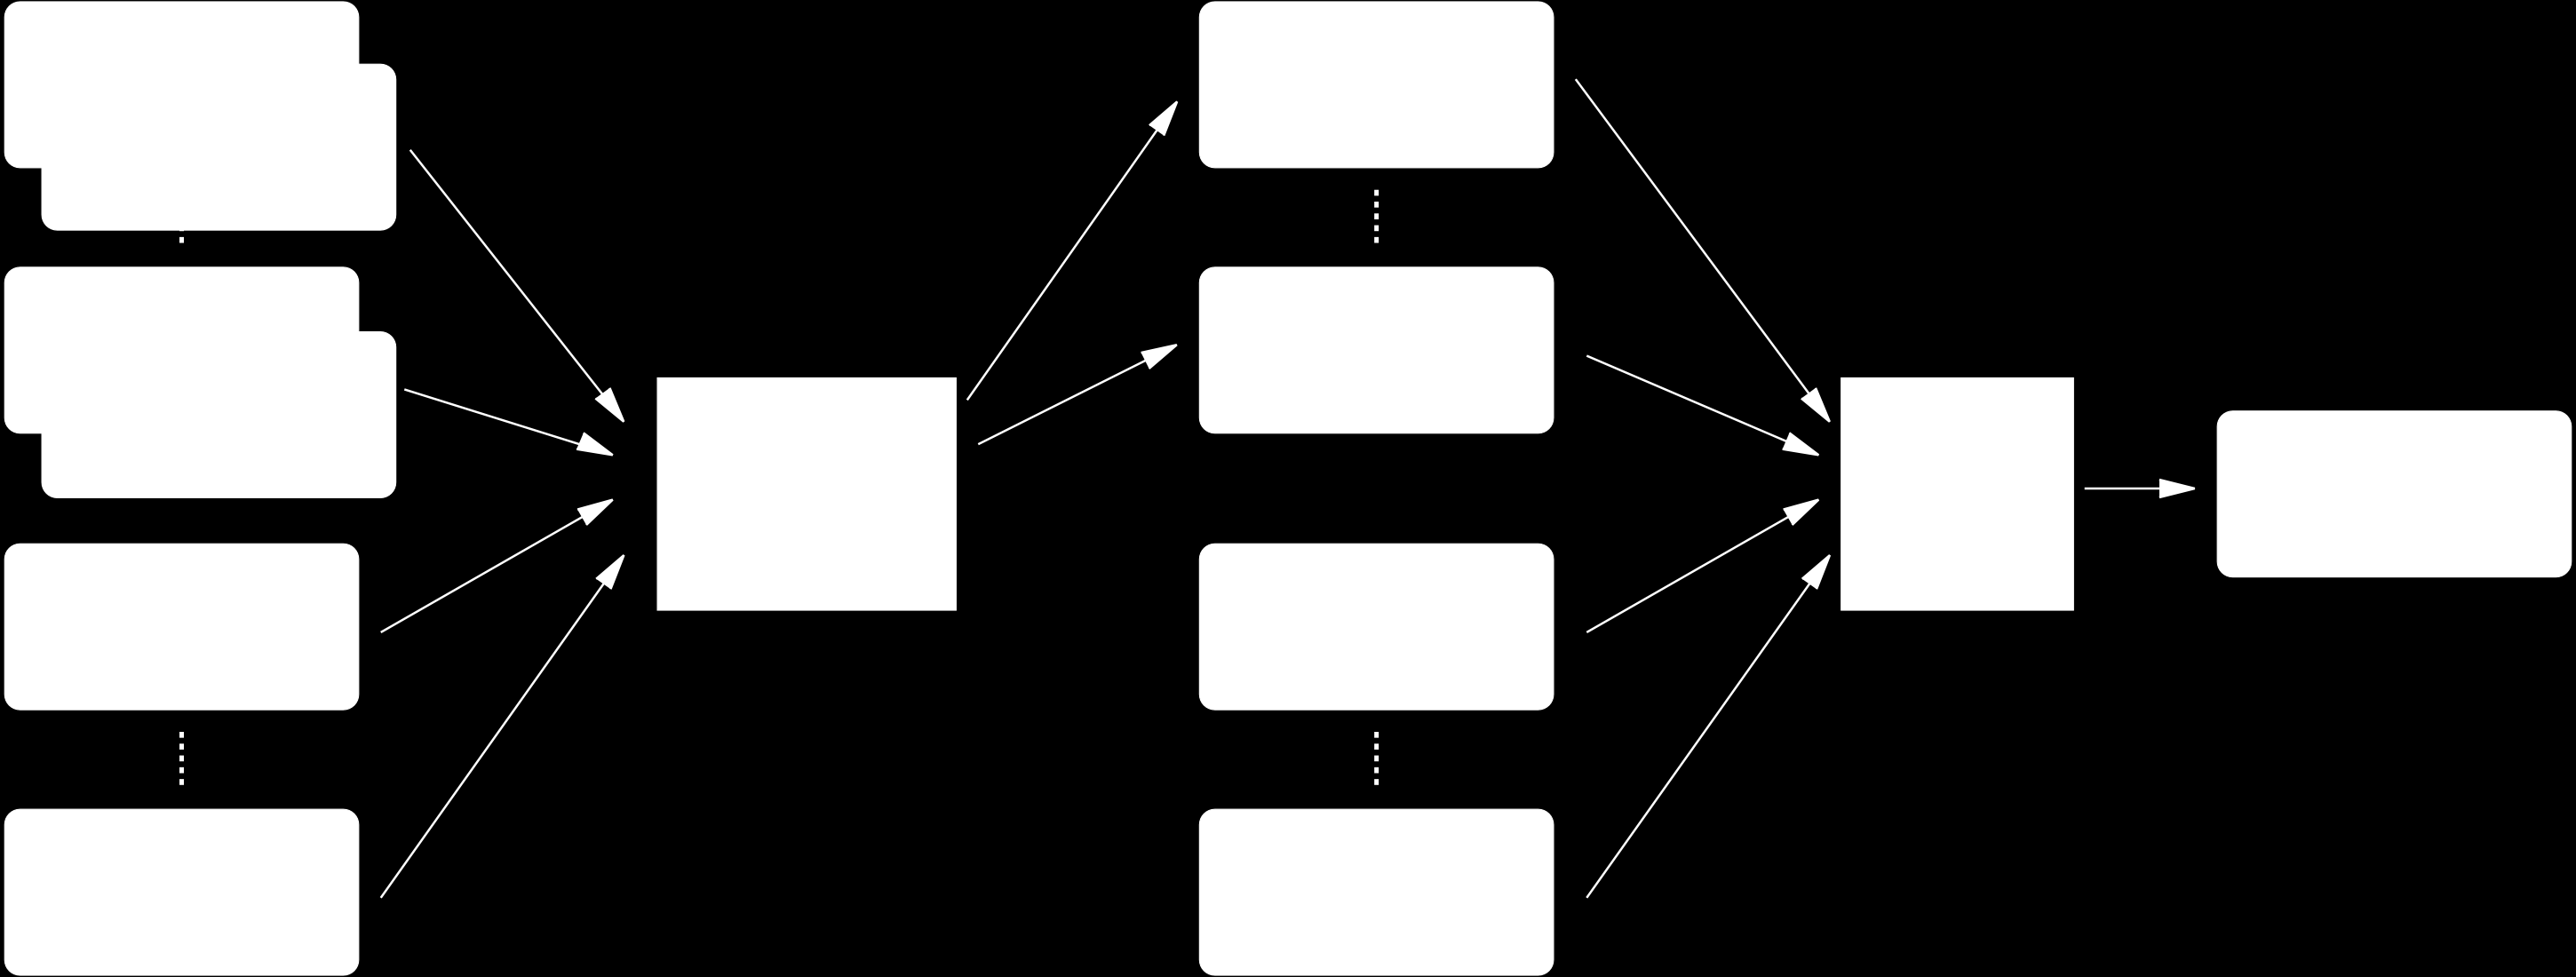 Langage C CHAPITRE 1. INTRODUCTION Mémoire vive de l ordinateur (quelques centaines de Mo), appelée aussi mémoire centrale ou RAM.